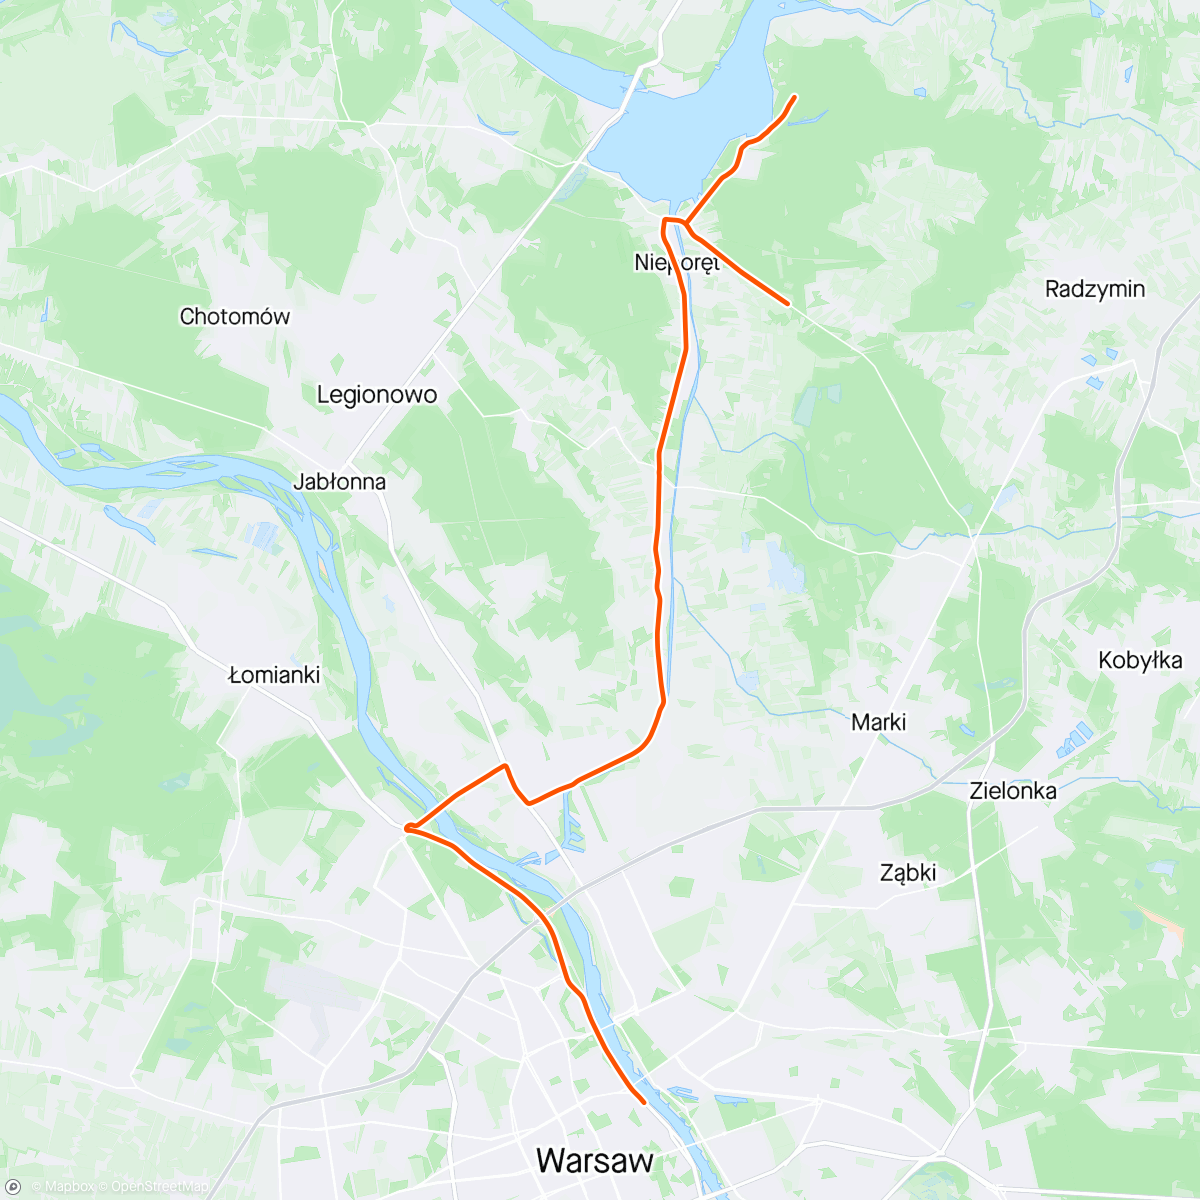 Mappa dell'attività ROUVY - Warsaw Olympic Triathlon